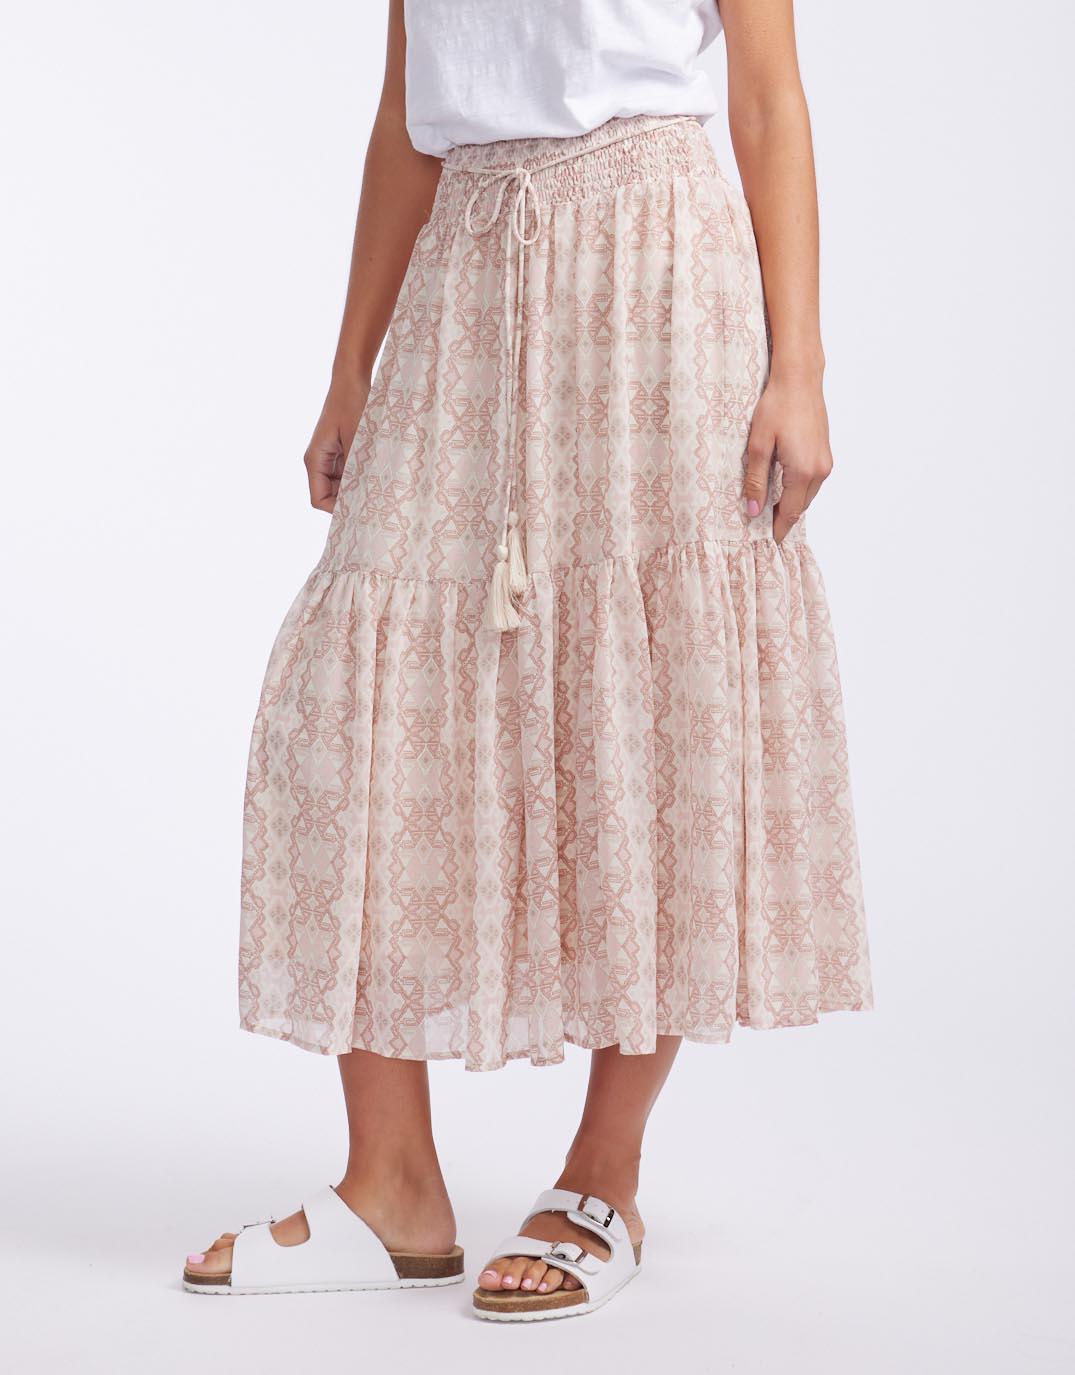 White & Co. - Midsummer Skirt - Pink Aztec - White & Co Living Skirts